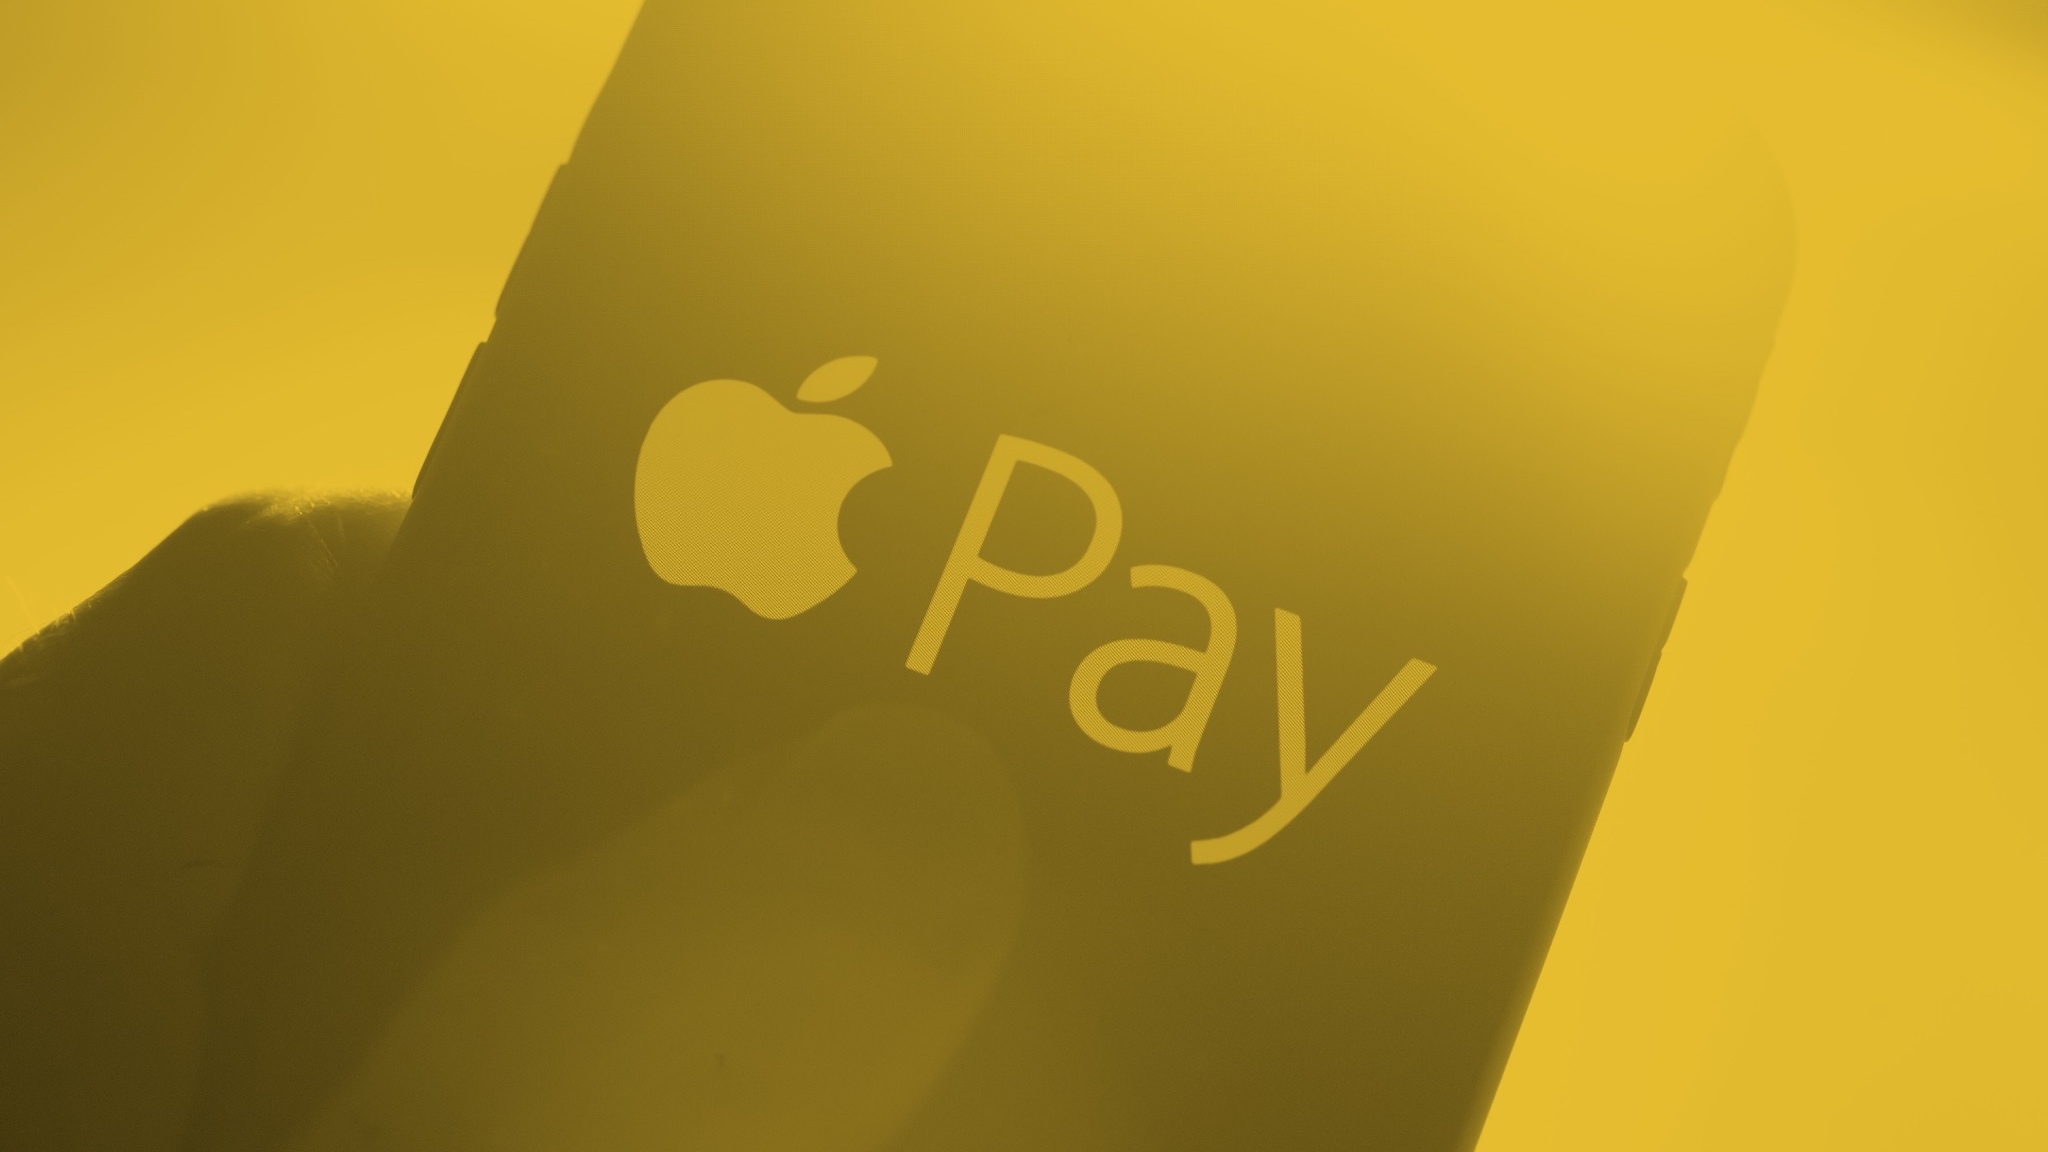 خدمات 14 فبراير 2020 Apple Pay اتخذ الخطوة التالية مع رموز QR والإيصالات